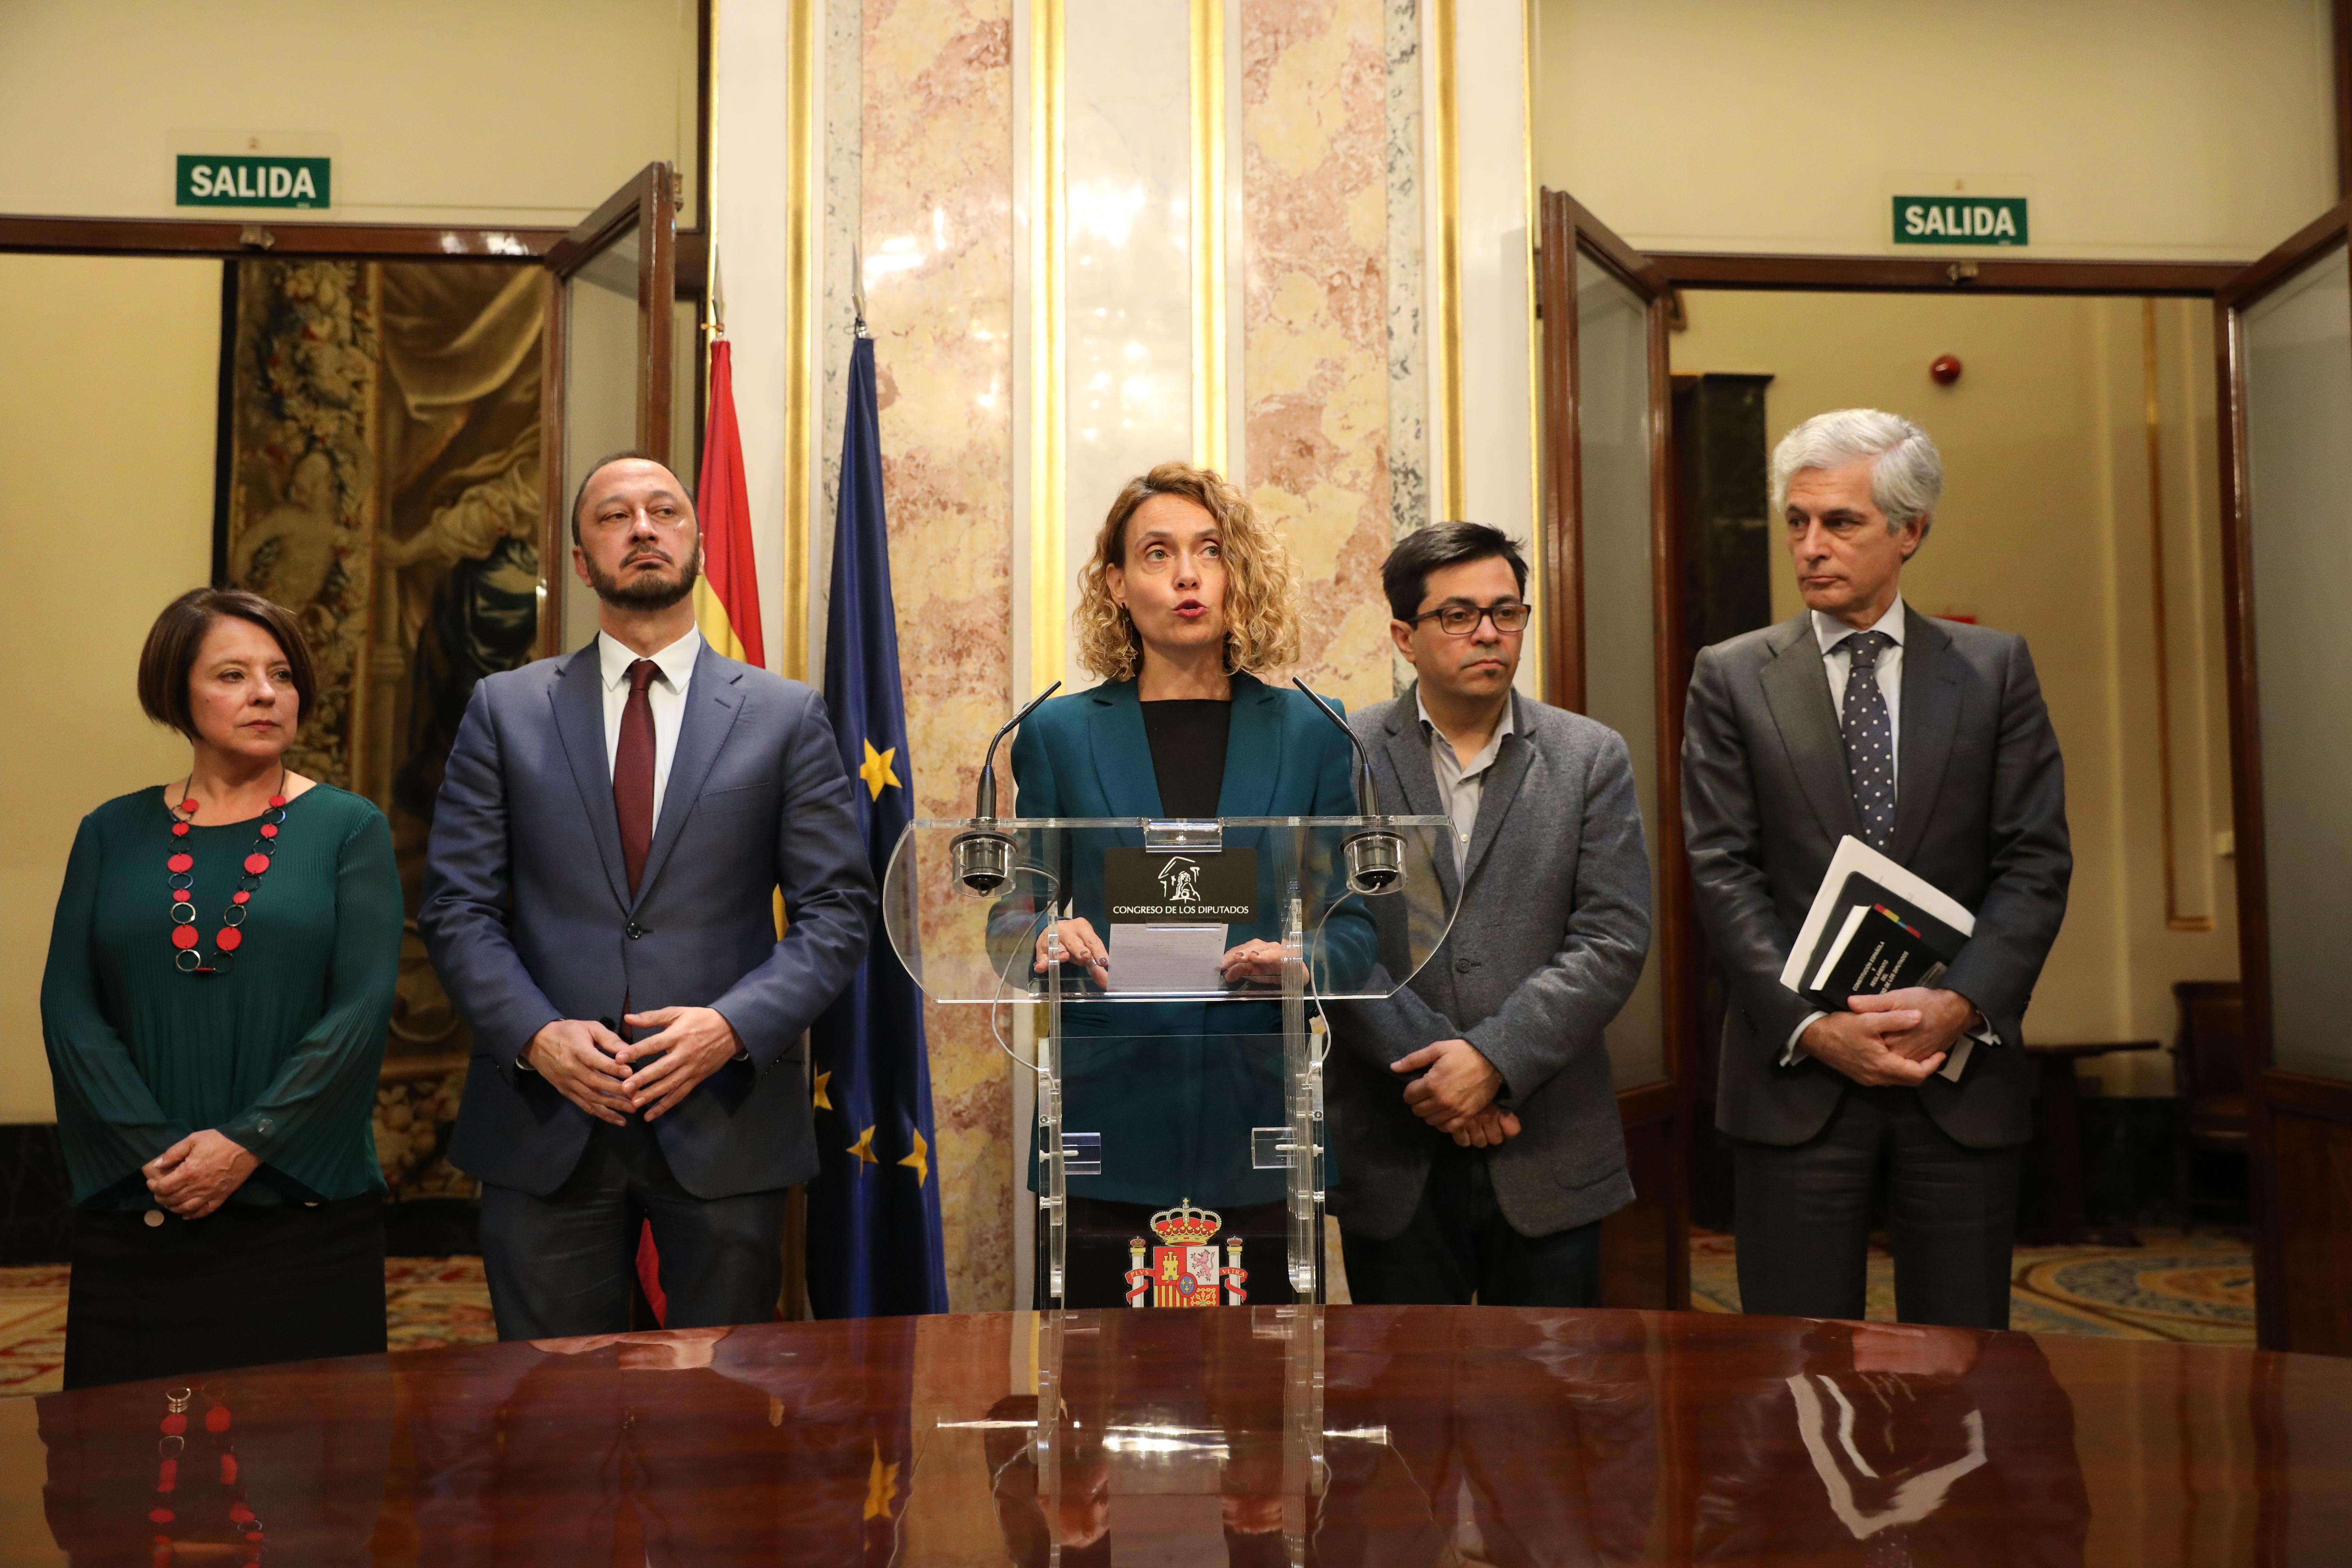 La presidenta del Congreso, Meritxell Batet, junto a los miembros de la Mesa, anuncia la suspensión de las actividades parlamentarias.